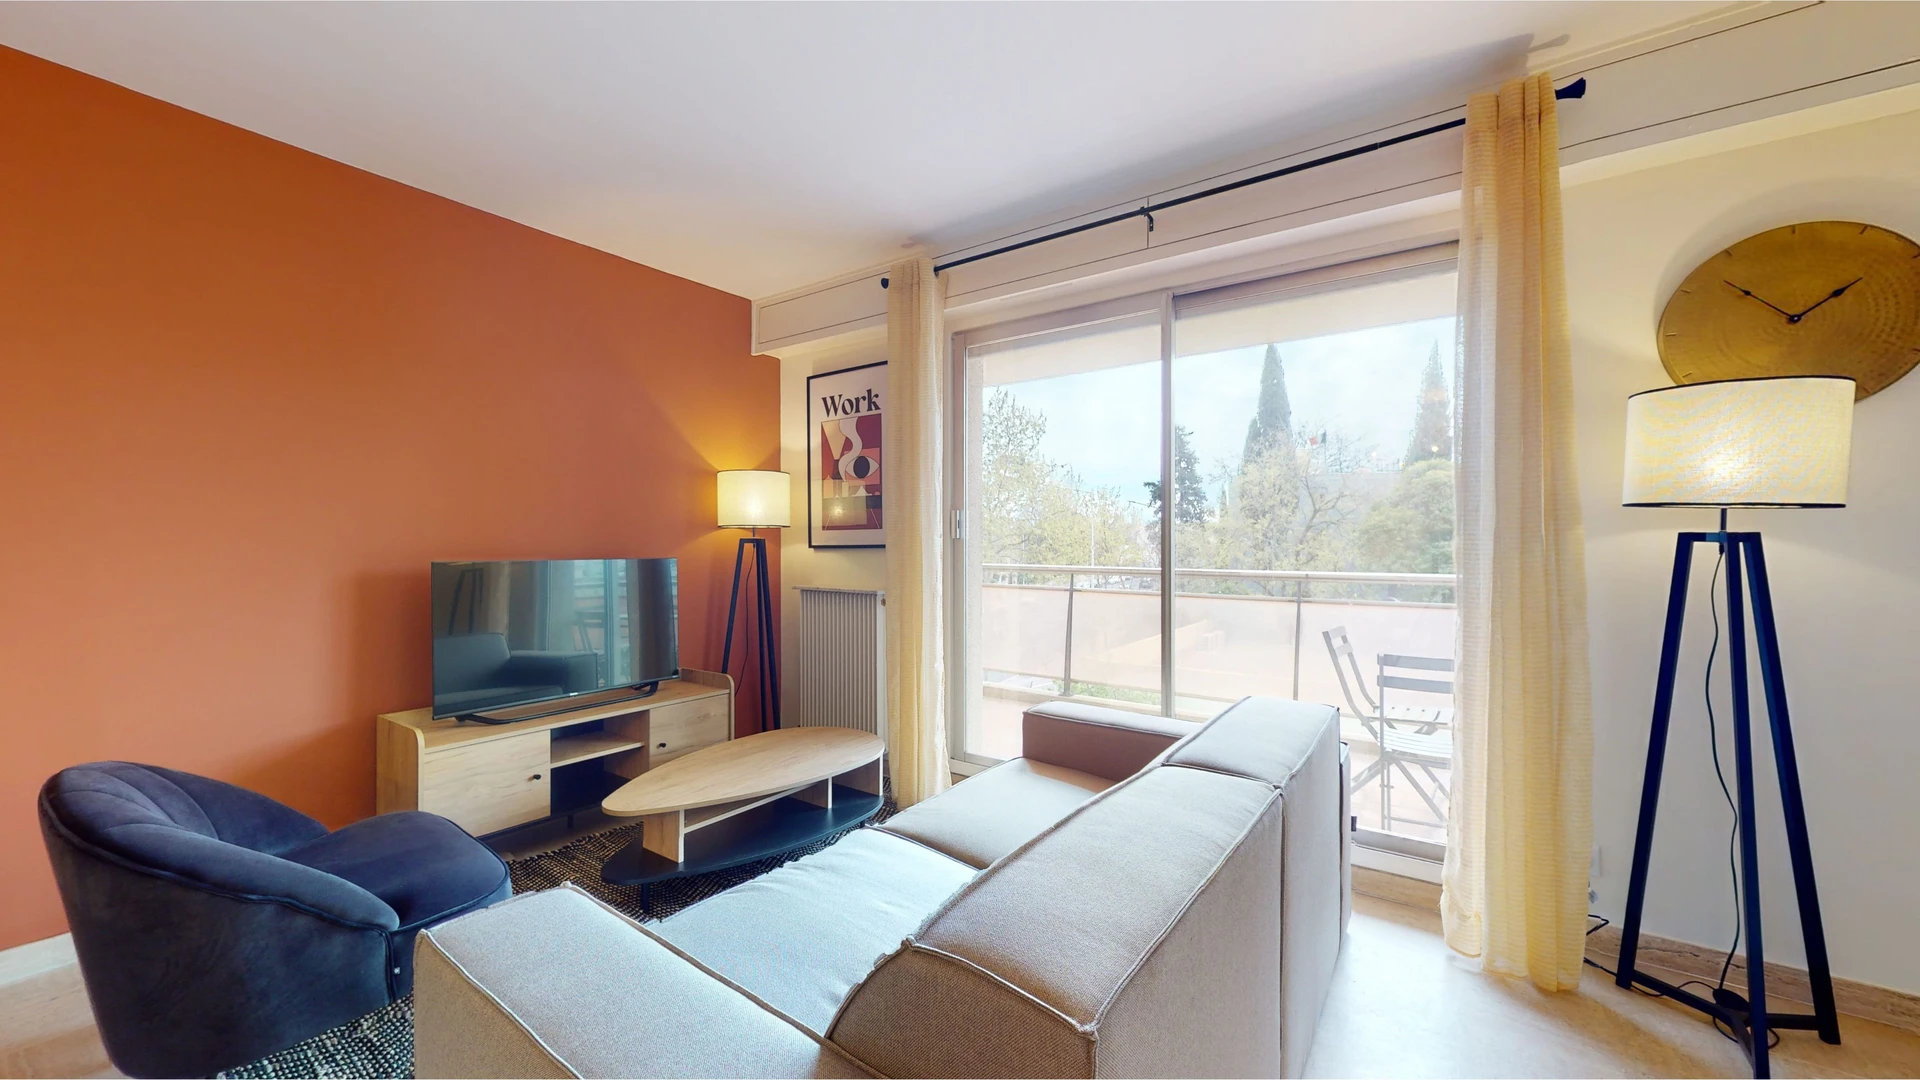 Chambre à louer dans un appartement en colocation à Montpellier